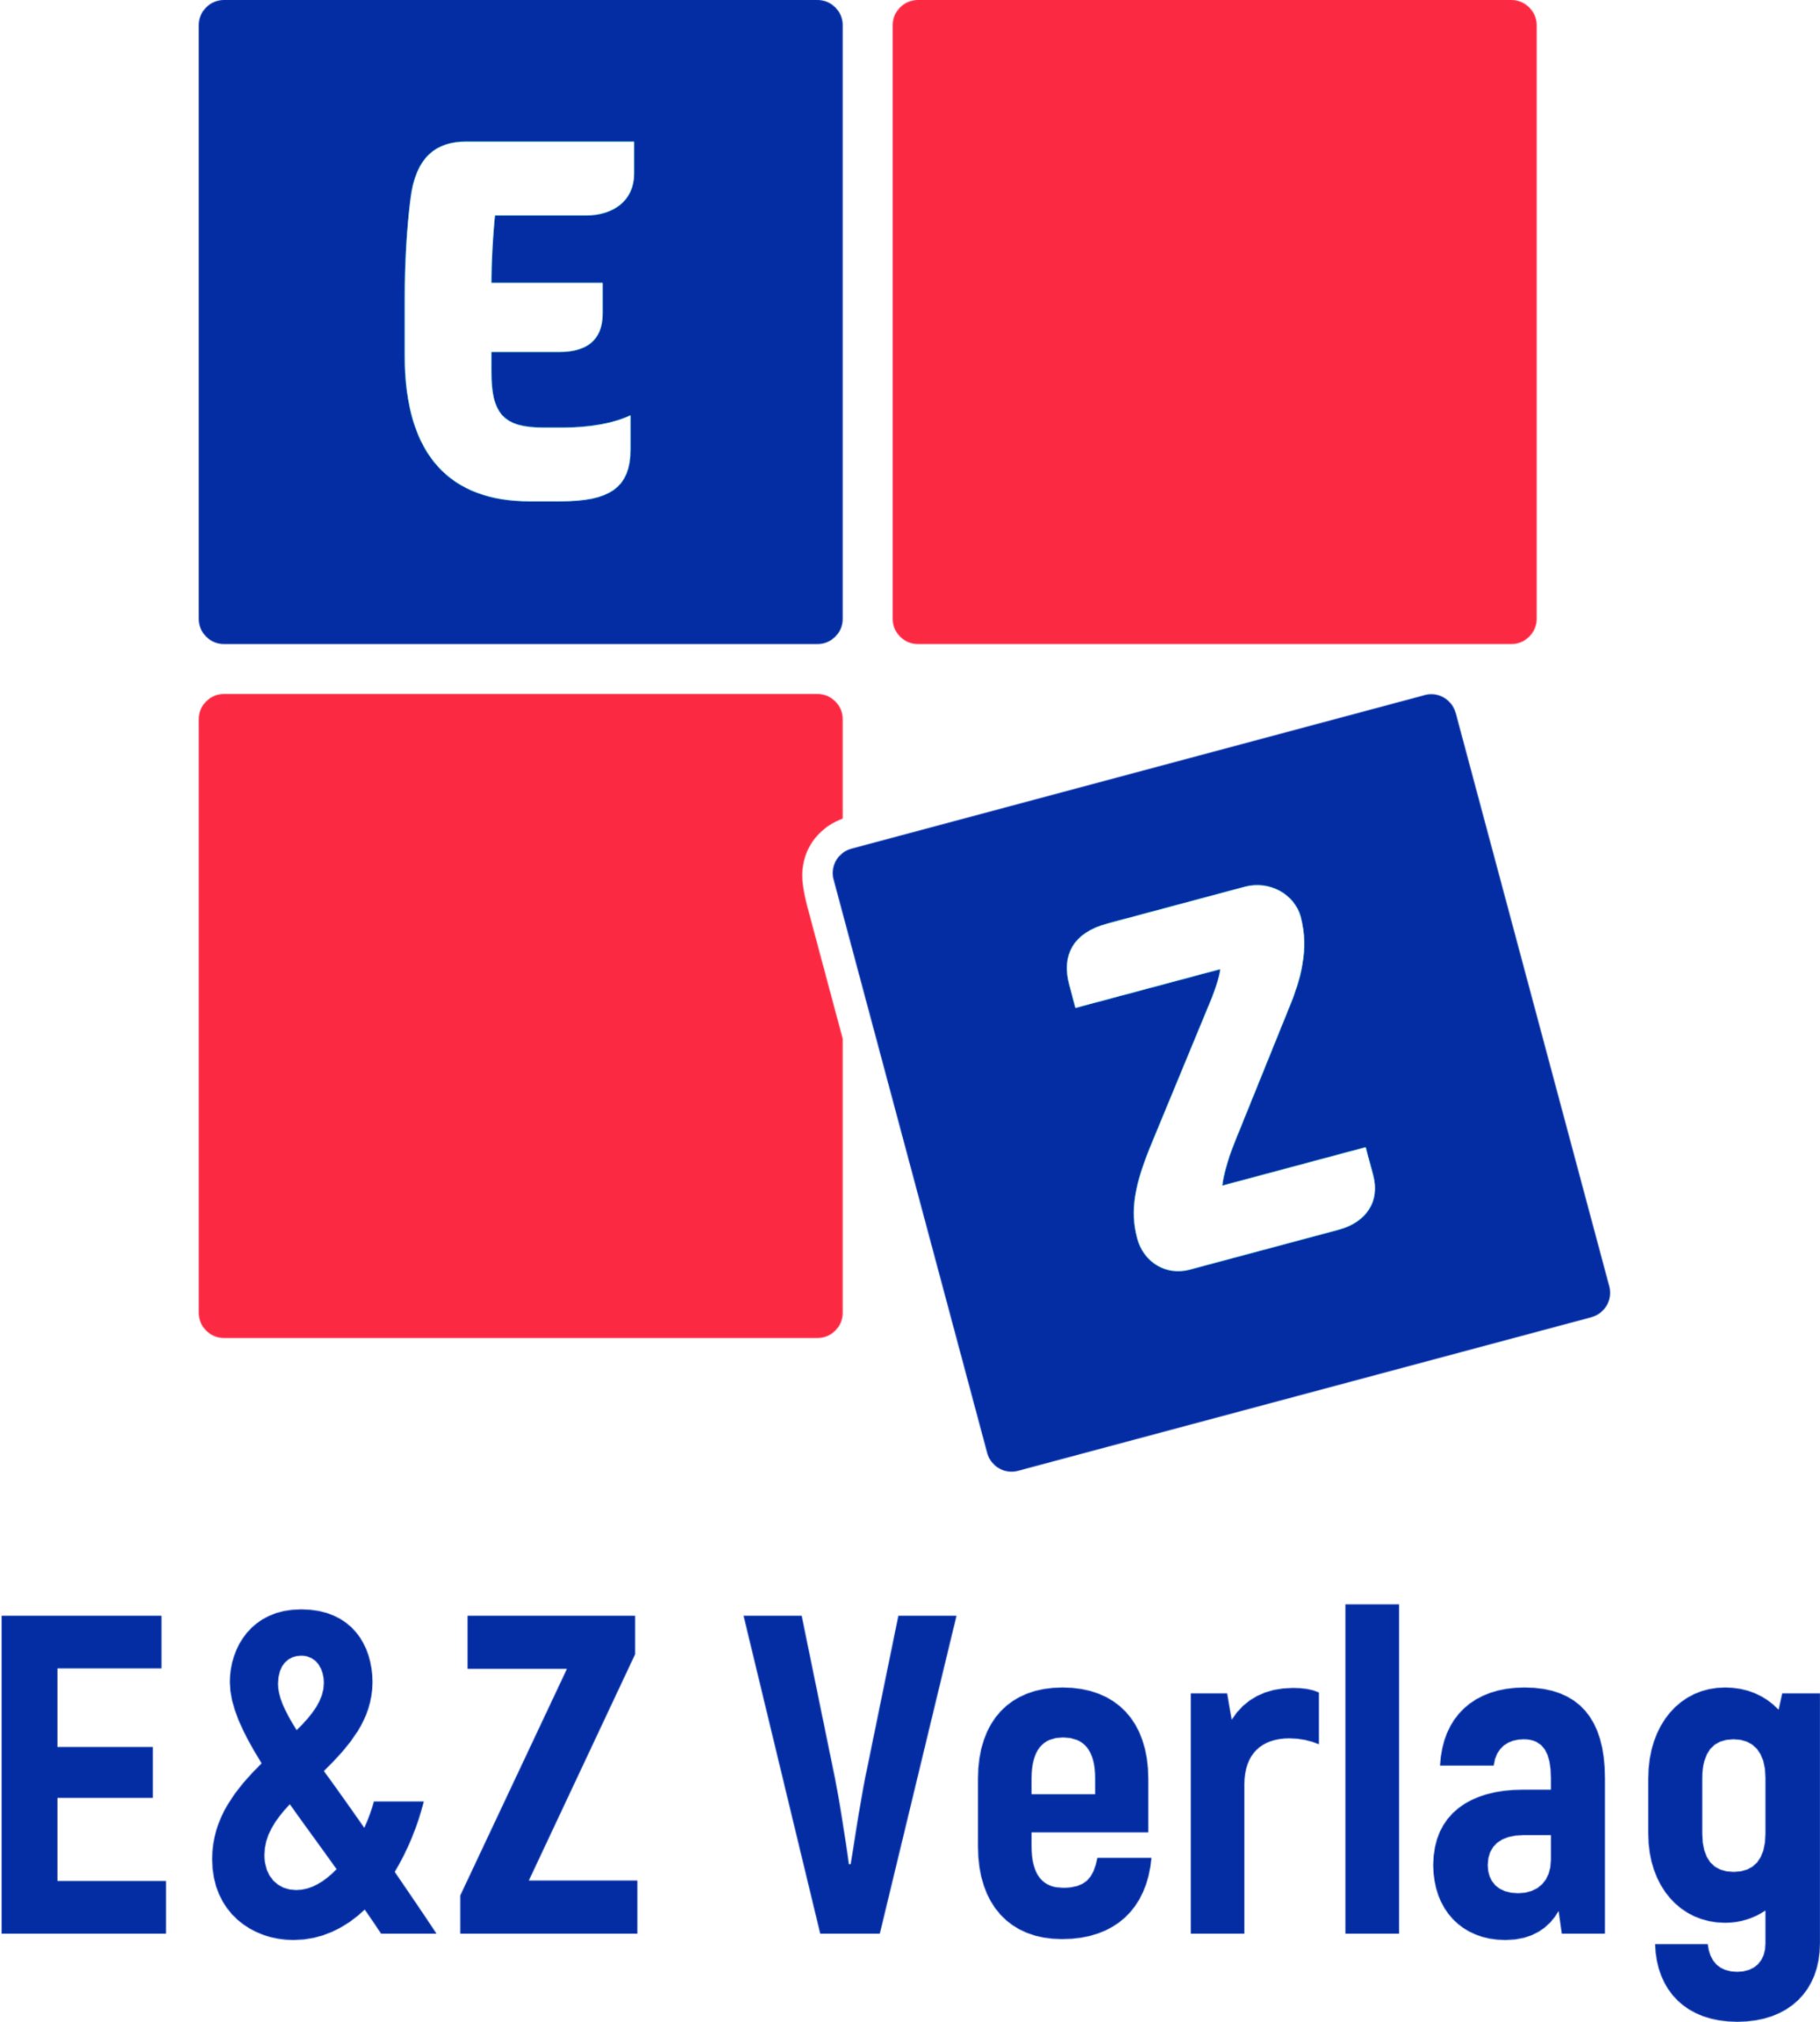 E&Z-Verlag GmbH